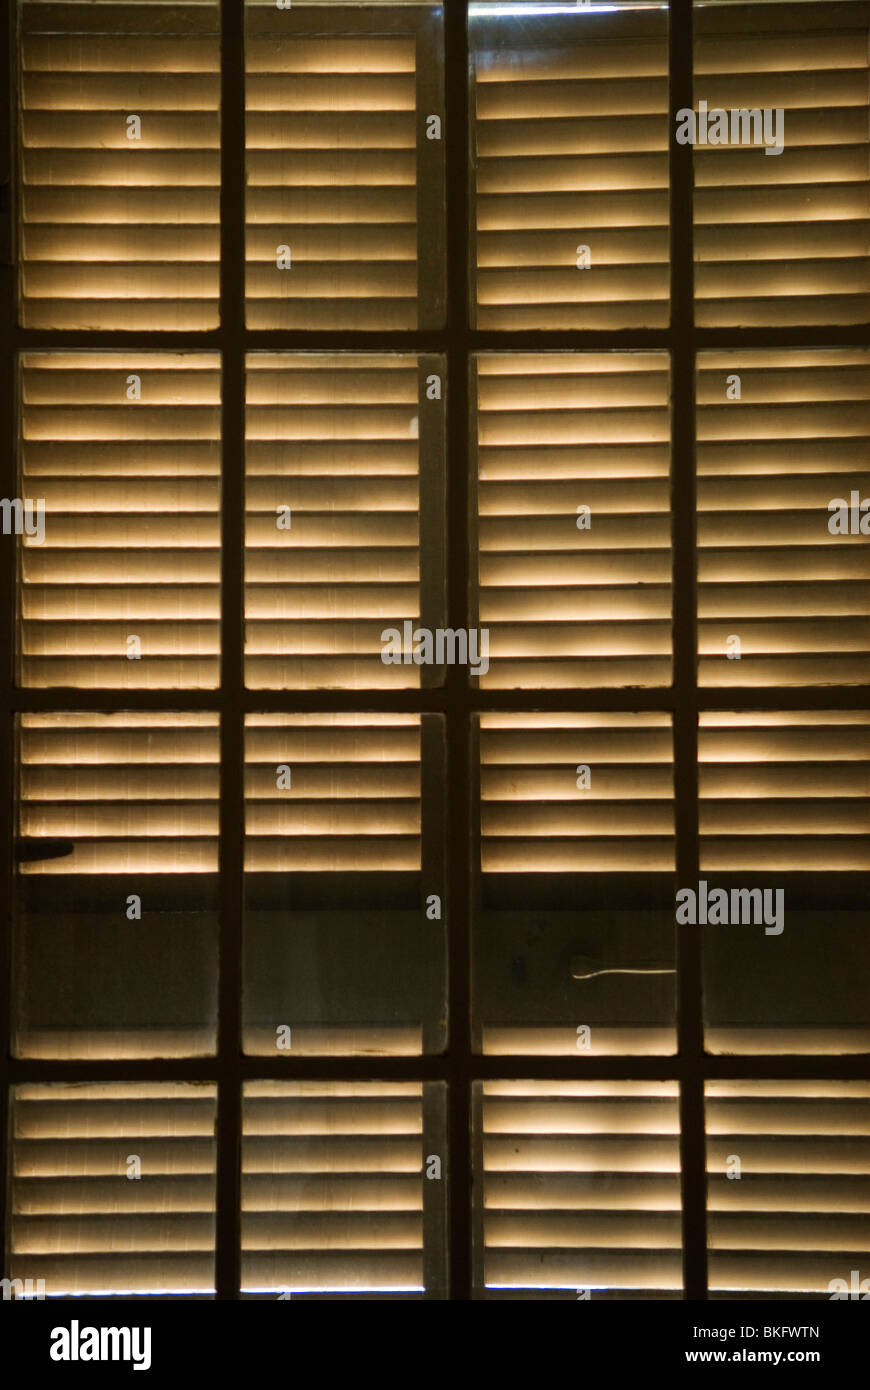 Wooden blind window shutters light pattern. Stock Photo